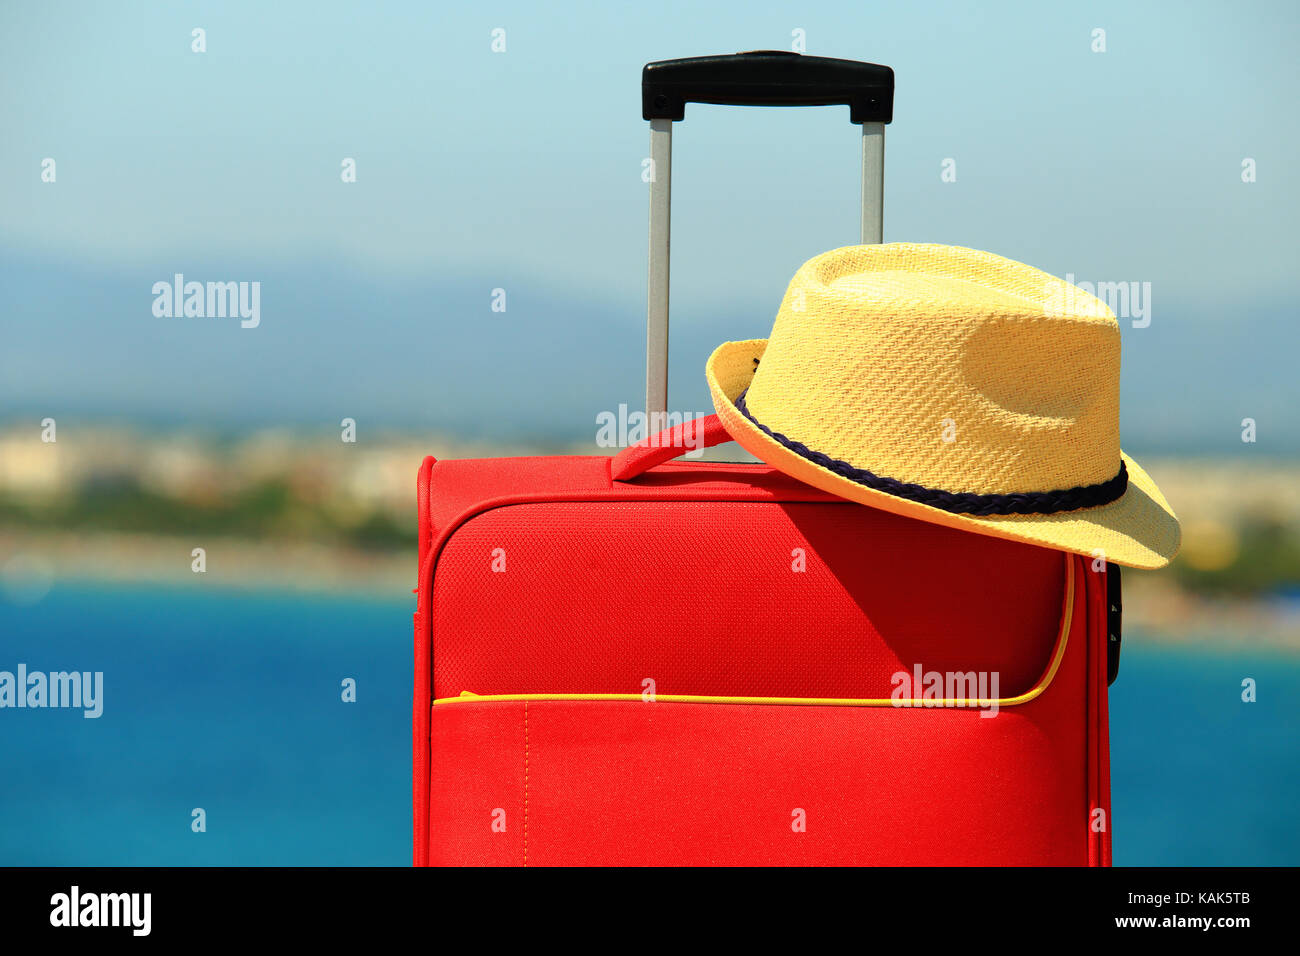 Sombrero en verano maleta roja cerca. Vacaciones y viajes concepto. maleta y sombrero amarillo en el soleado Mar de fondo. Foto de stock